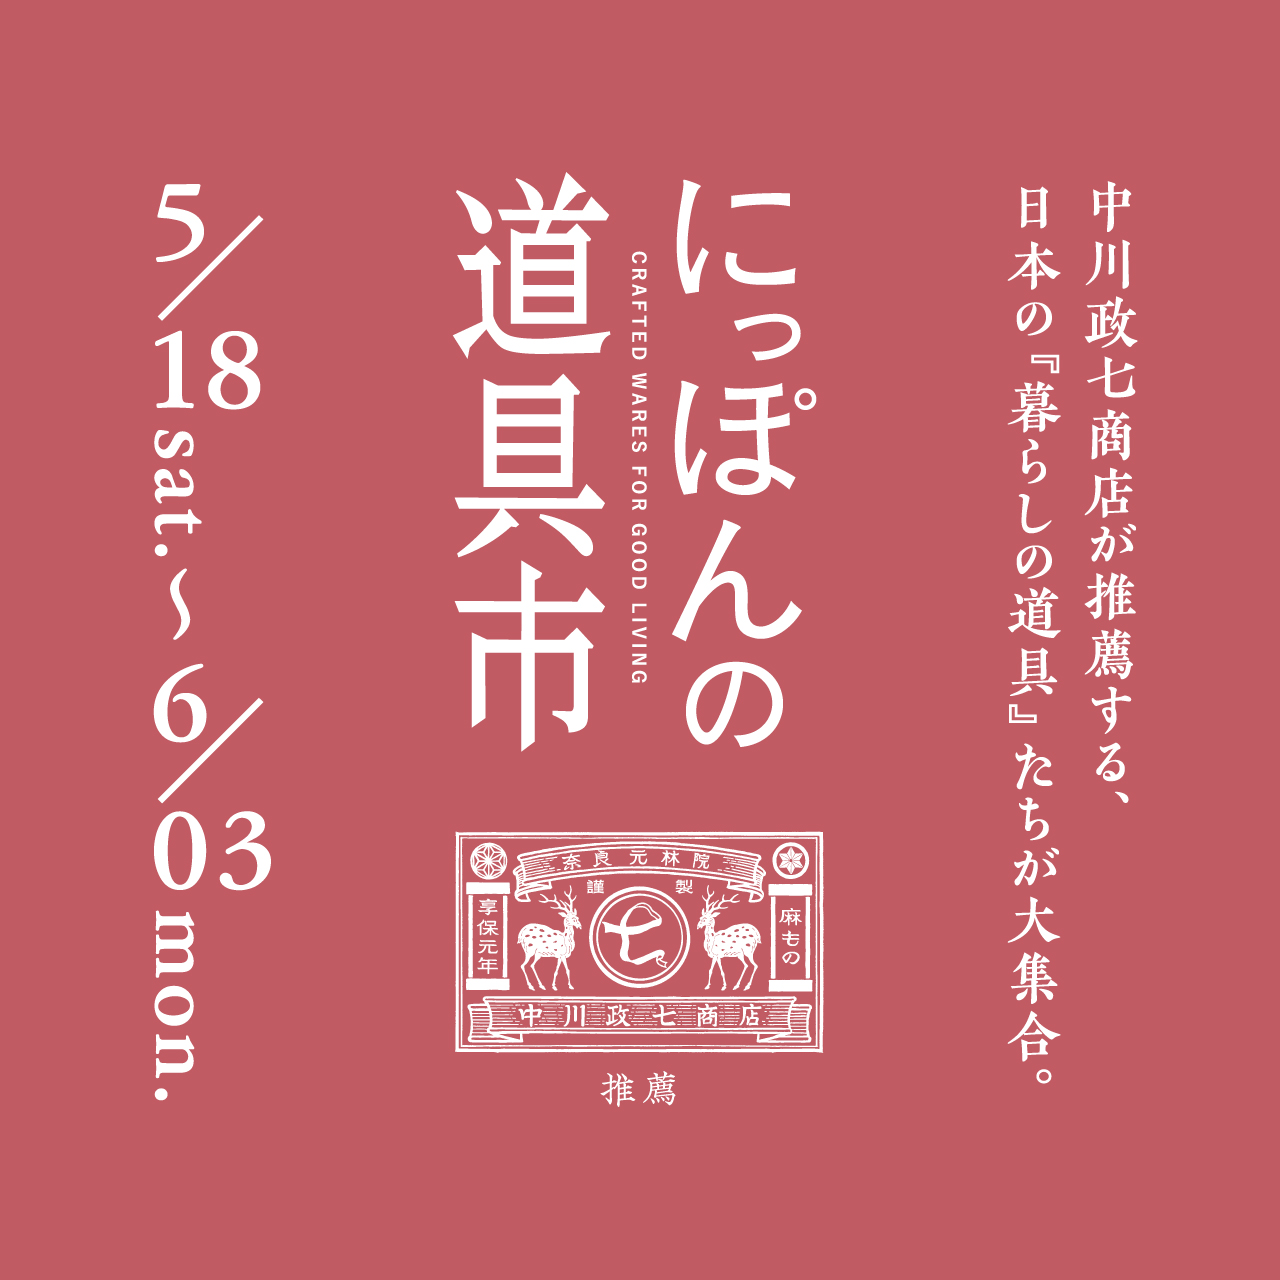 中川政七商店『にっぽんの道具市』を開催します！